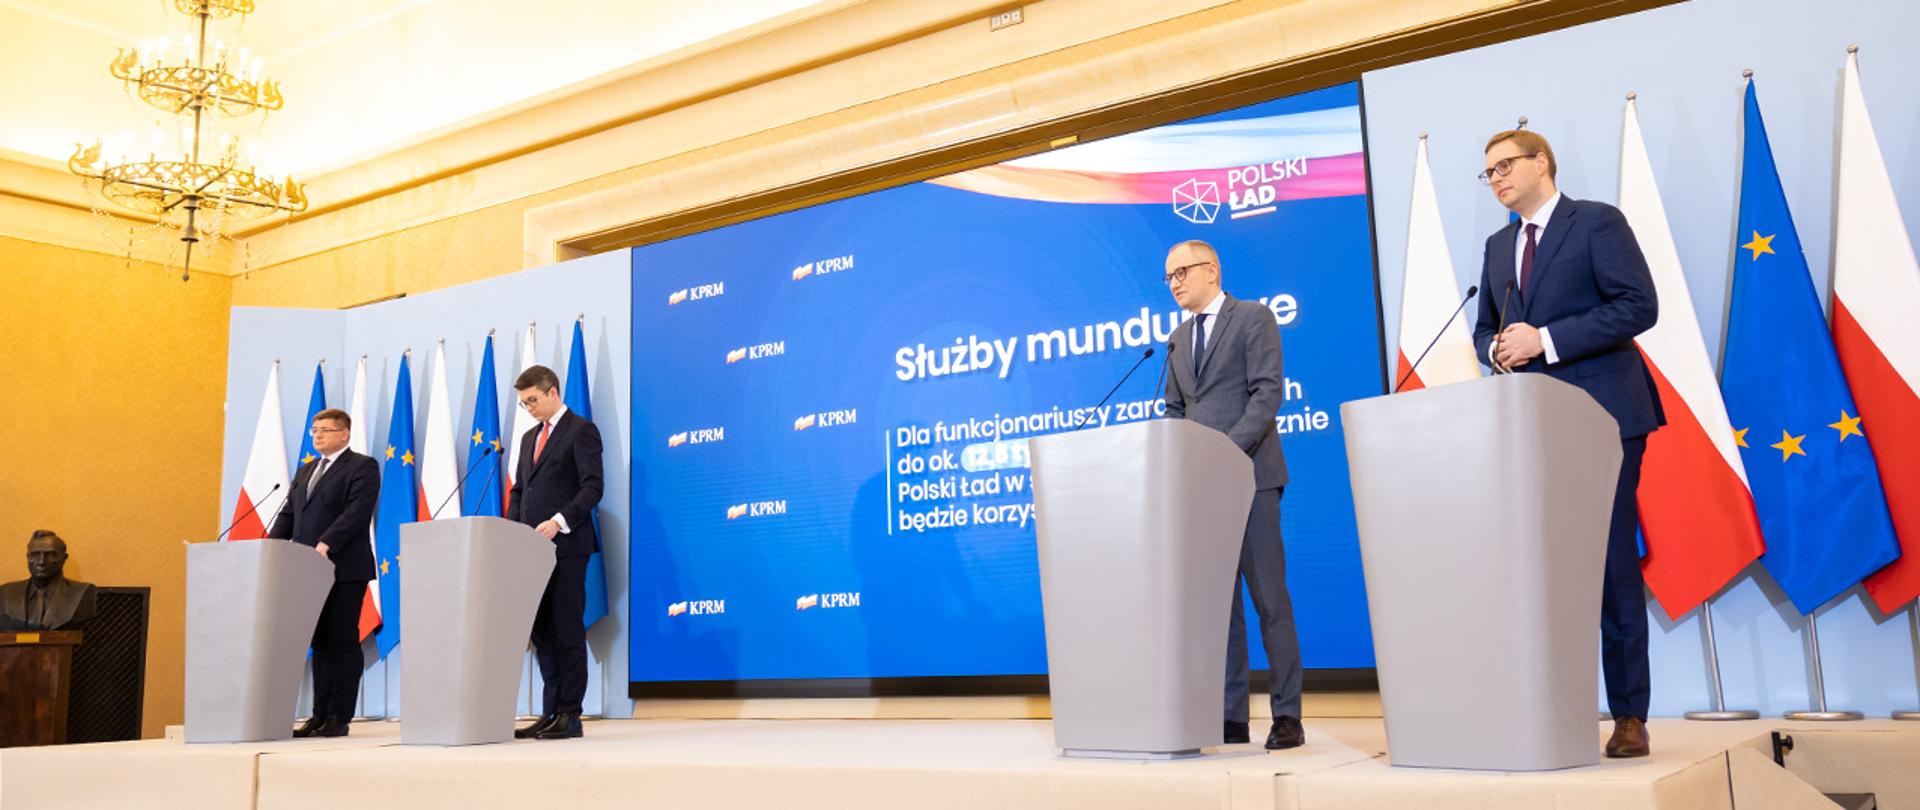 Na zdjęciu widać uczestników konferencji prasowej stojących za mównicami, m.in wiceministra Błażeja Pobożego. W tle widać flagi Polski i UE i ekran z wyświetloną prezentacją.